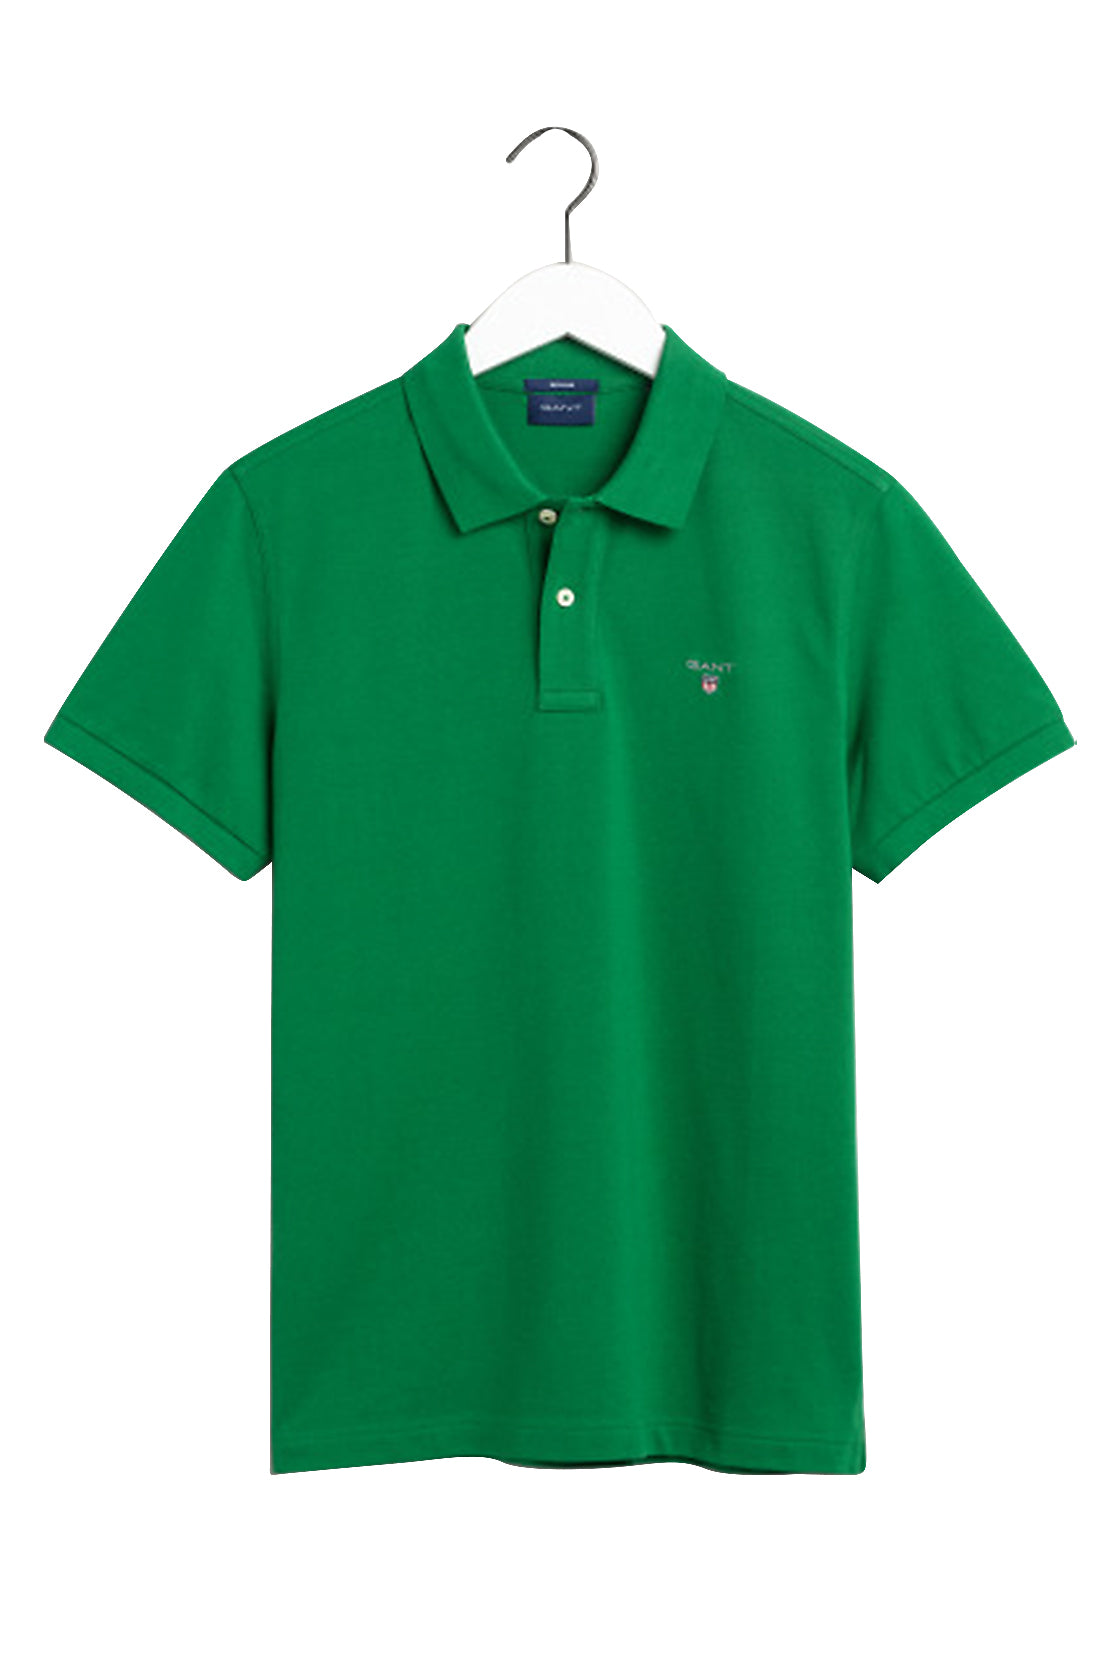 Gant Solid Pique Short Sleeve Rugger Lavish Green